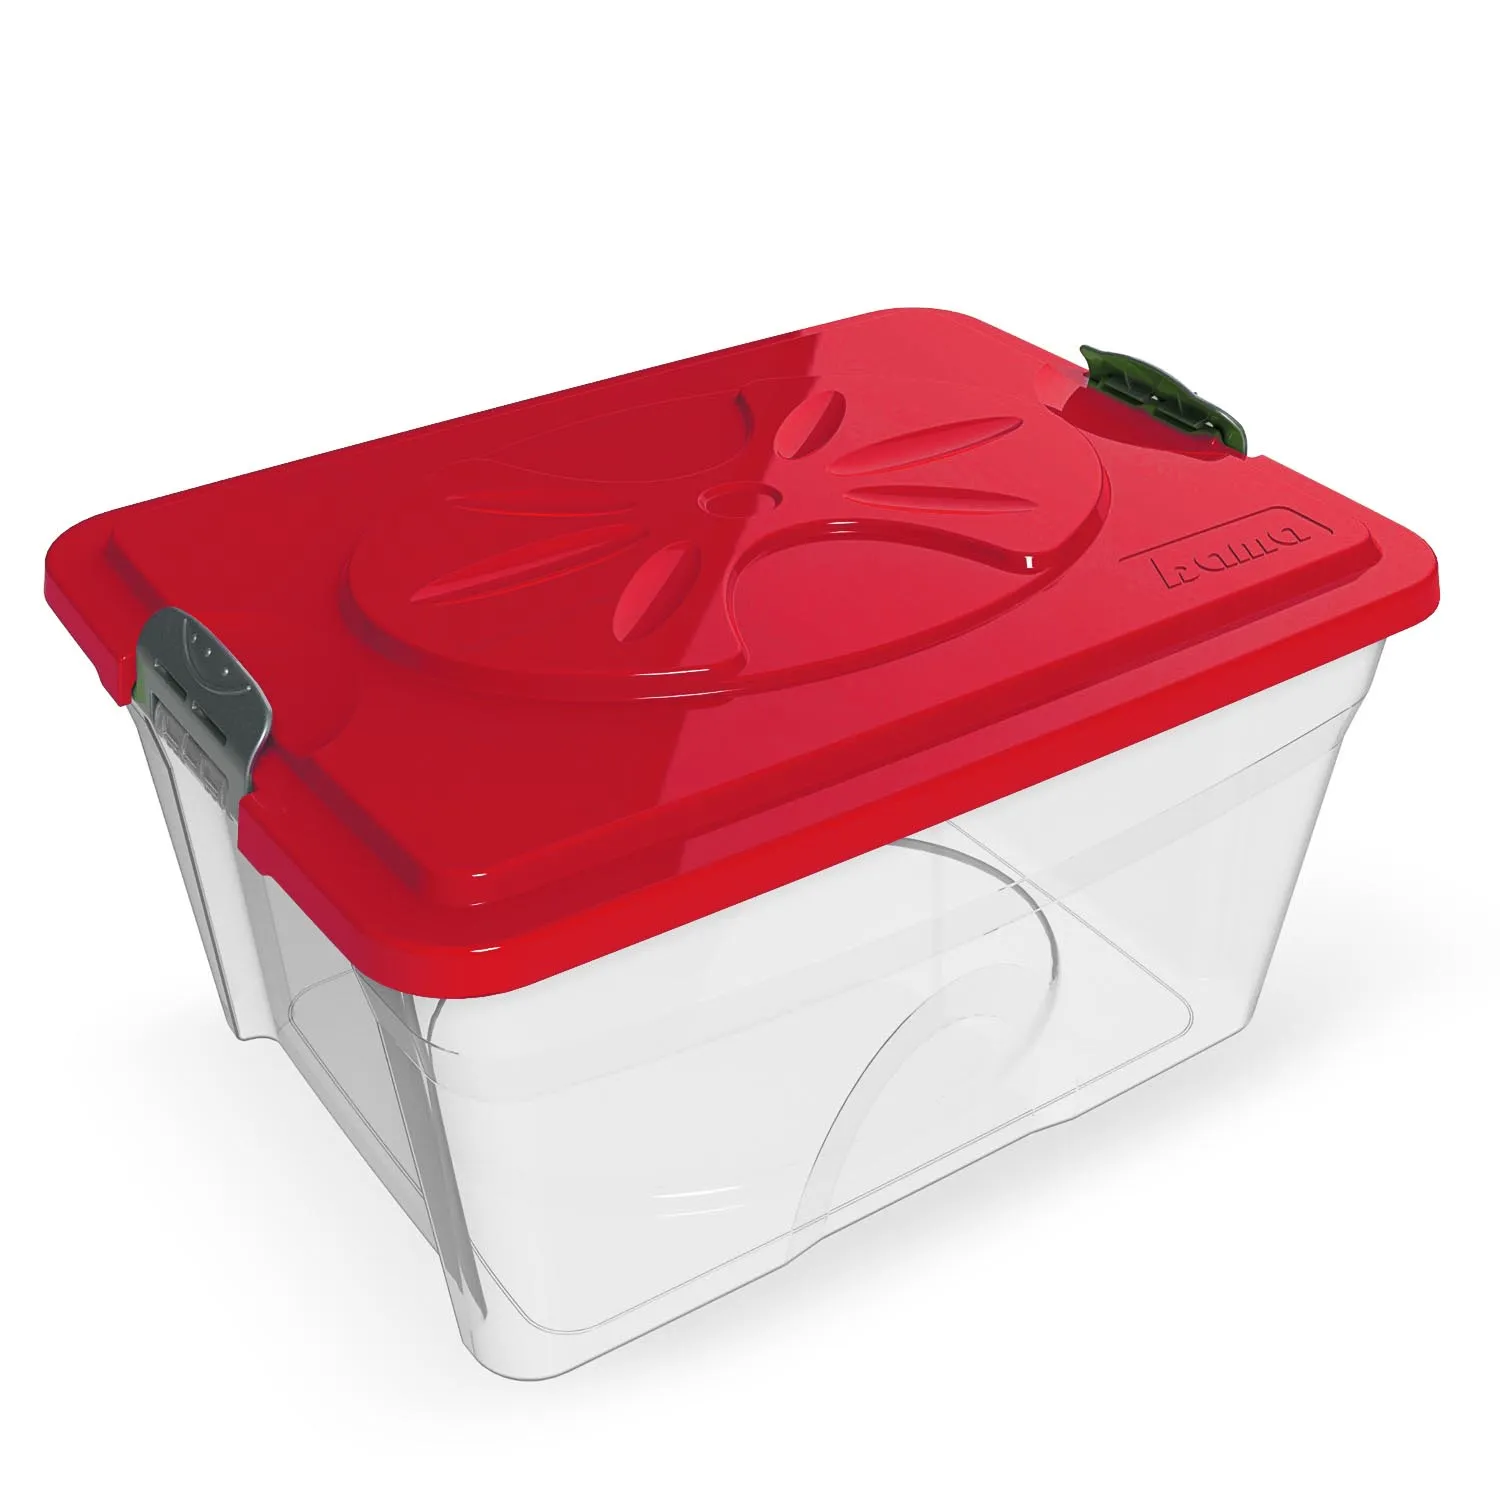 BAMA PET контейнер для хранения корма SIM BOX 18л 40x30x22h см, прозрачный СКИДКА 40%